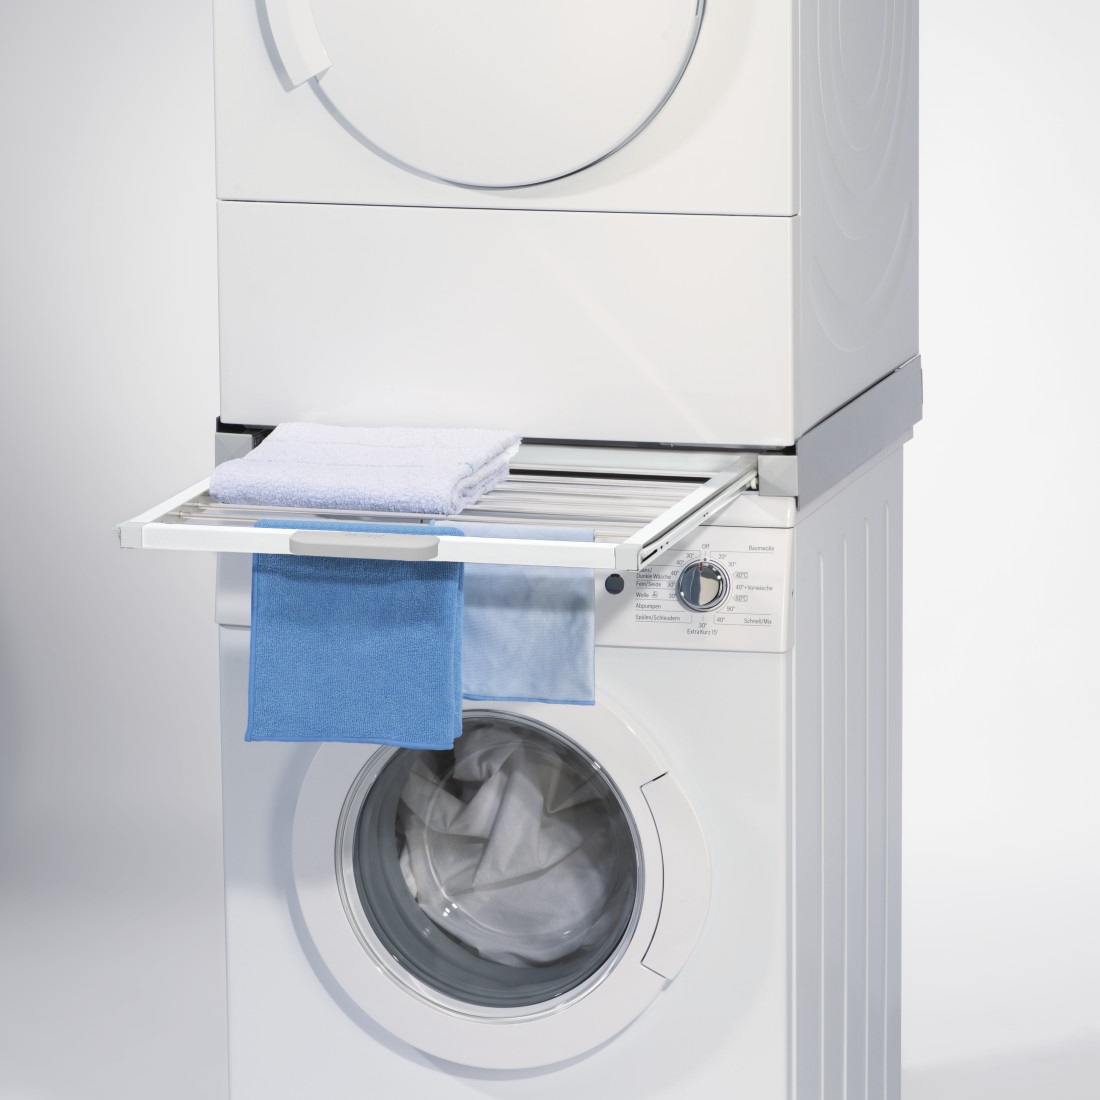 awx Druckfähige Anwendung - Xavax, Zwischenbausatz für Waschmaschinen/Trockner, integrierter Wäscheständer